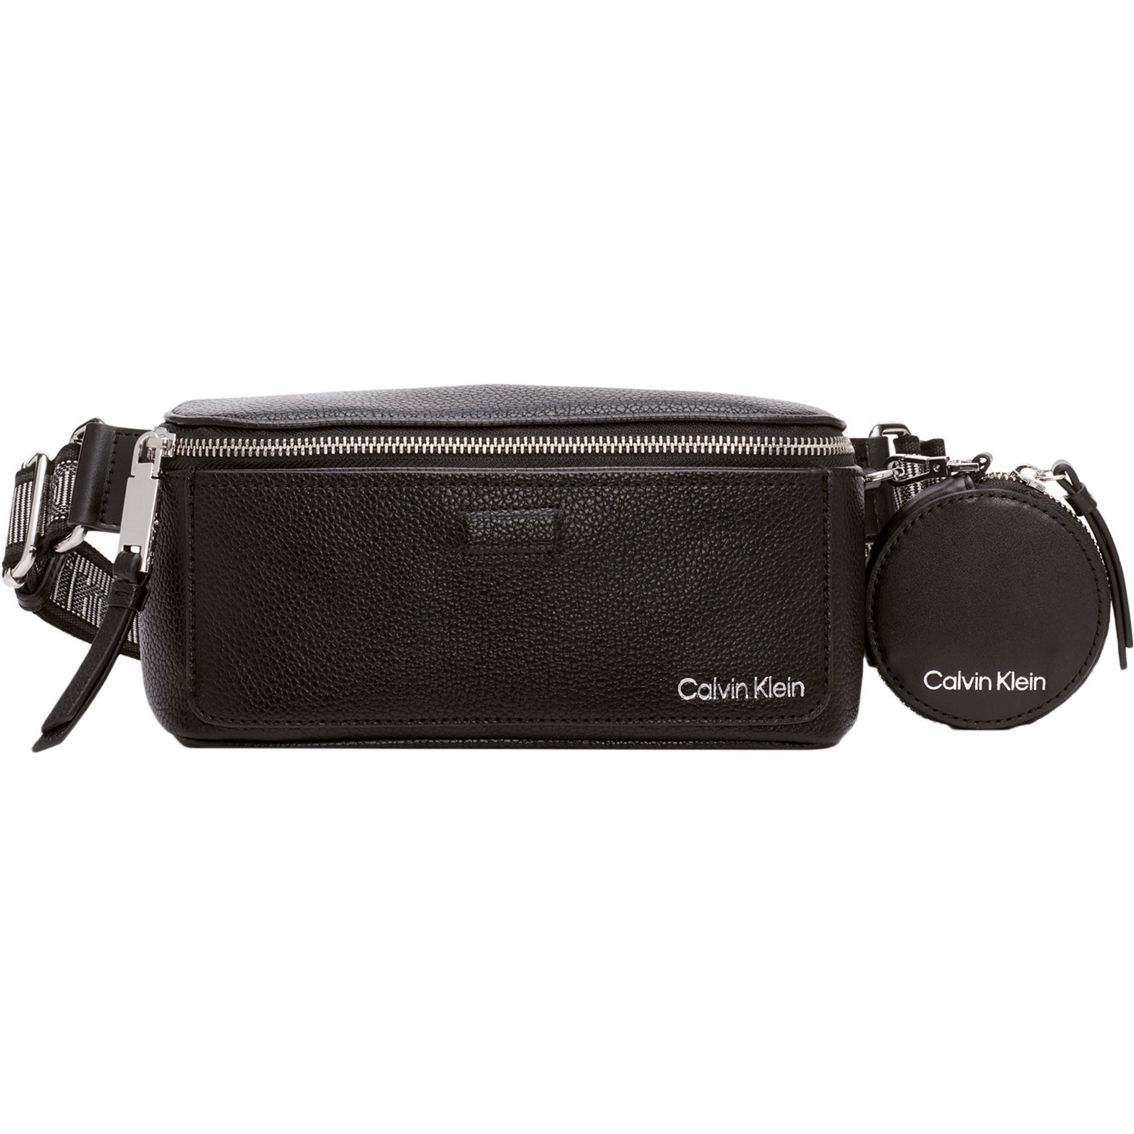 Calvin Klein Millie Belt Bag | Travel Accessories | Clothing ...